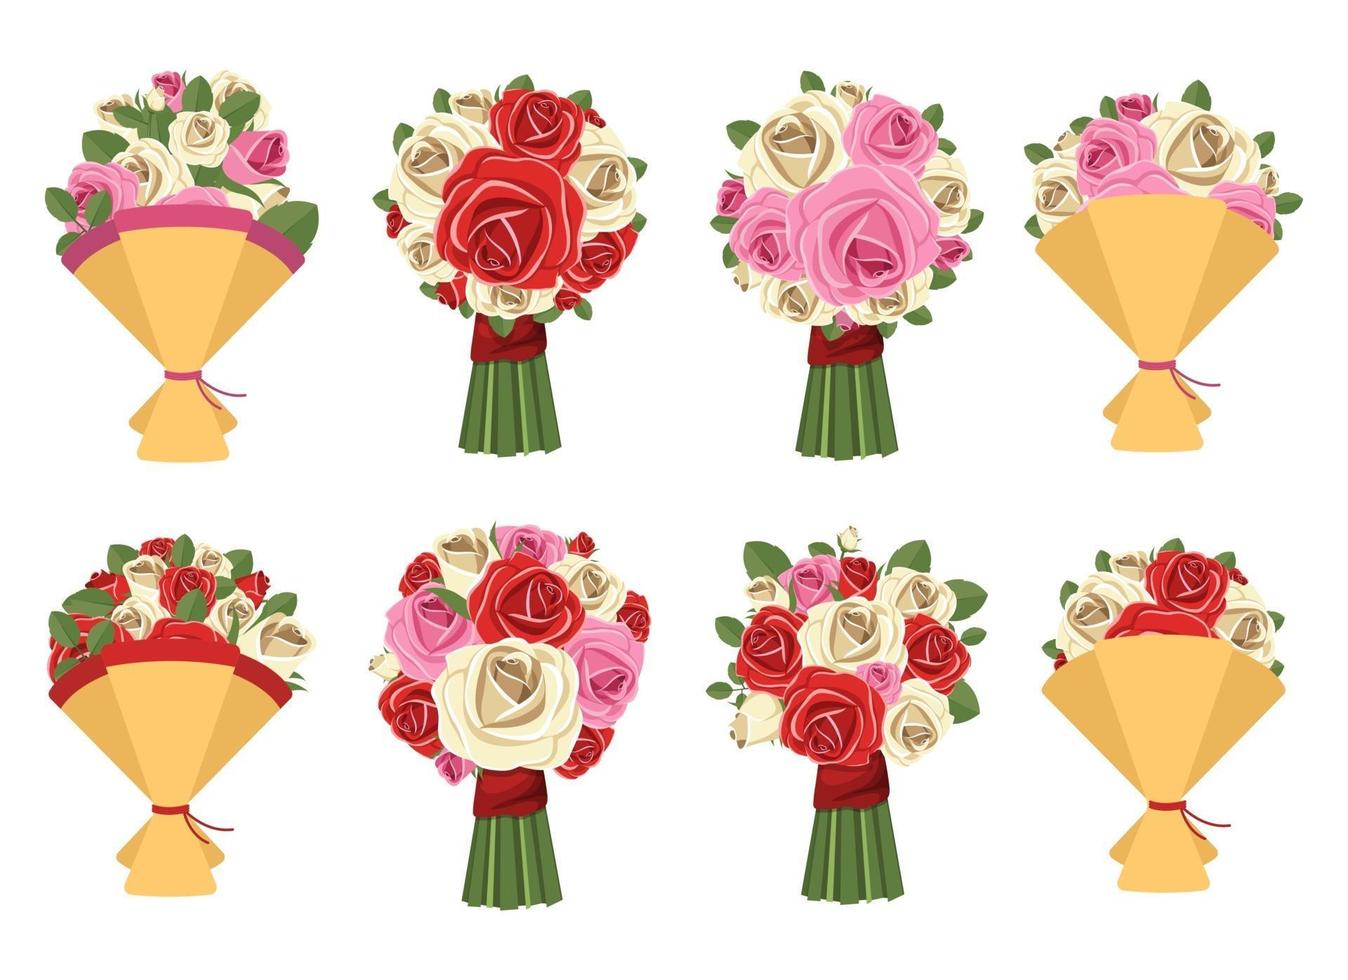 bloemboeket vector ontwerp illustratie set geïsoleerd op een witte achtergrond